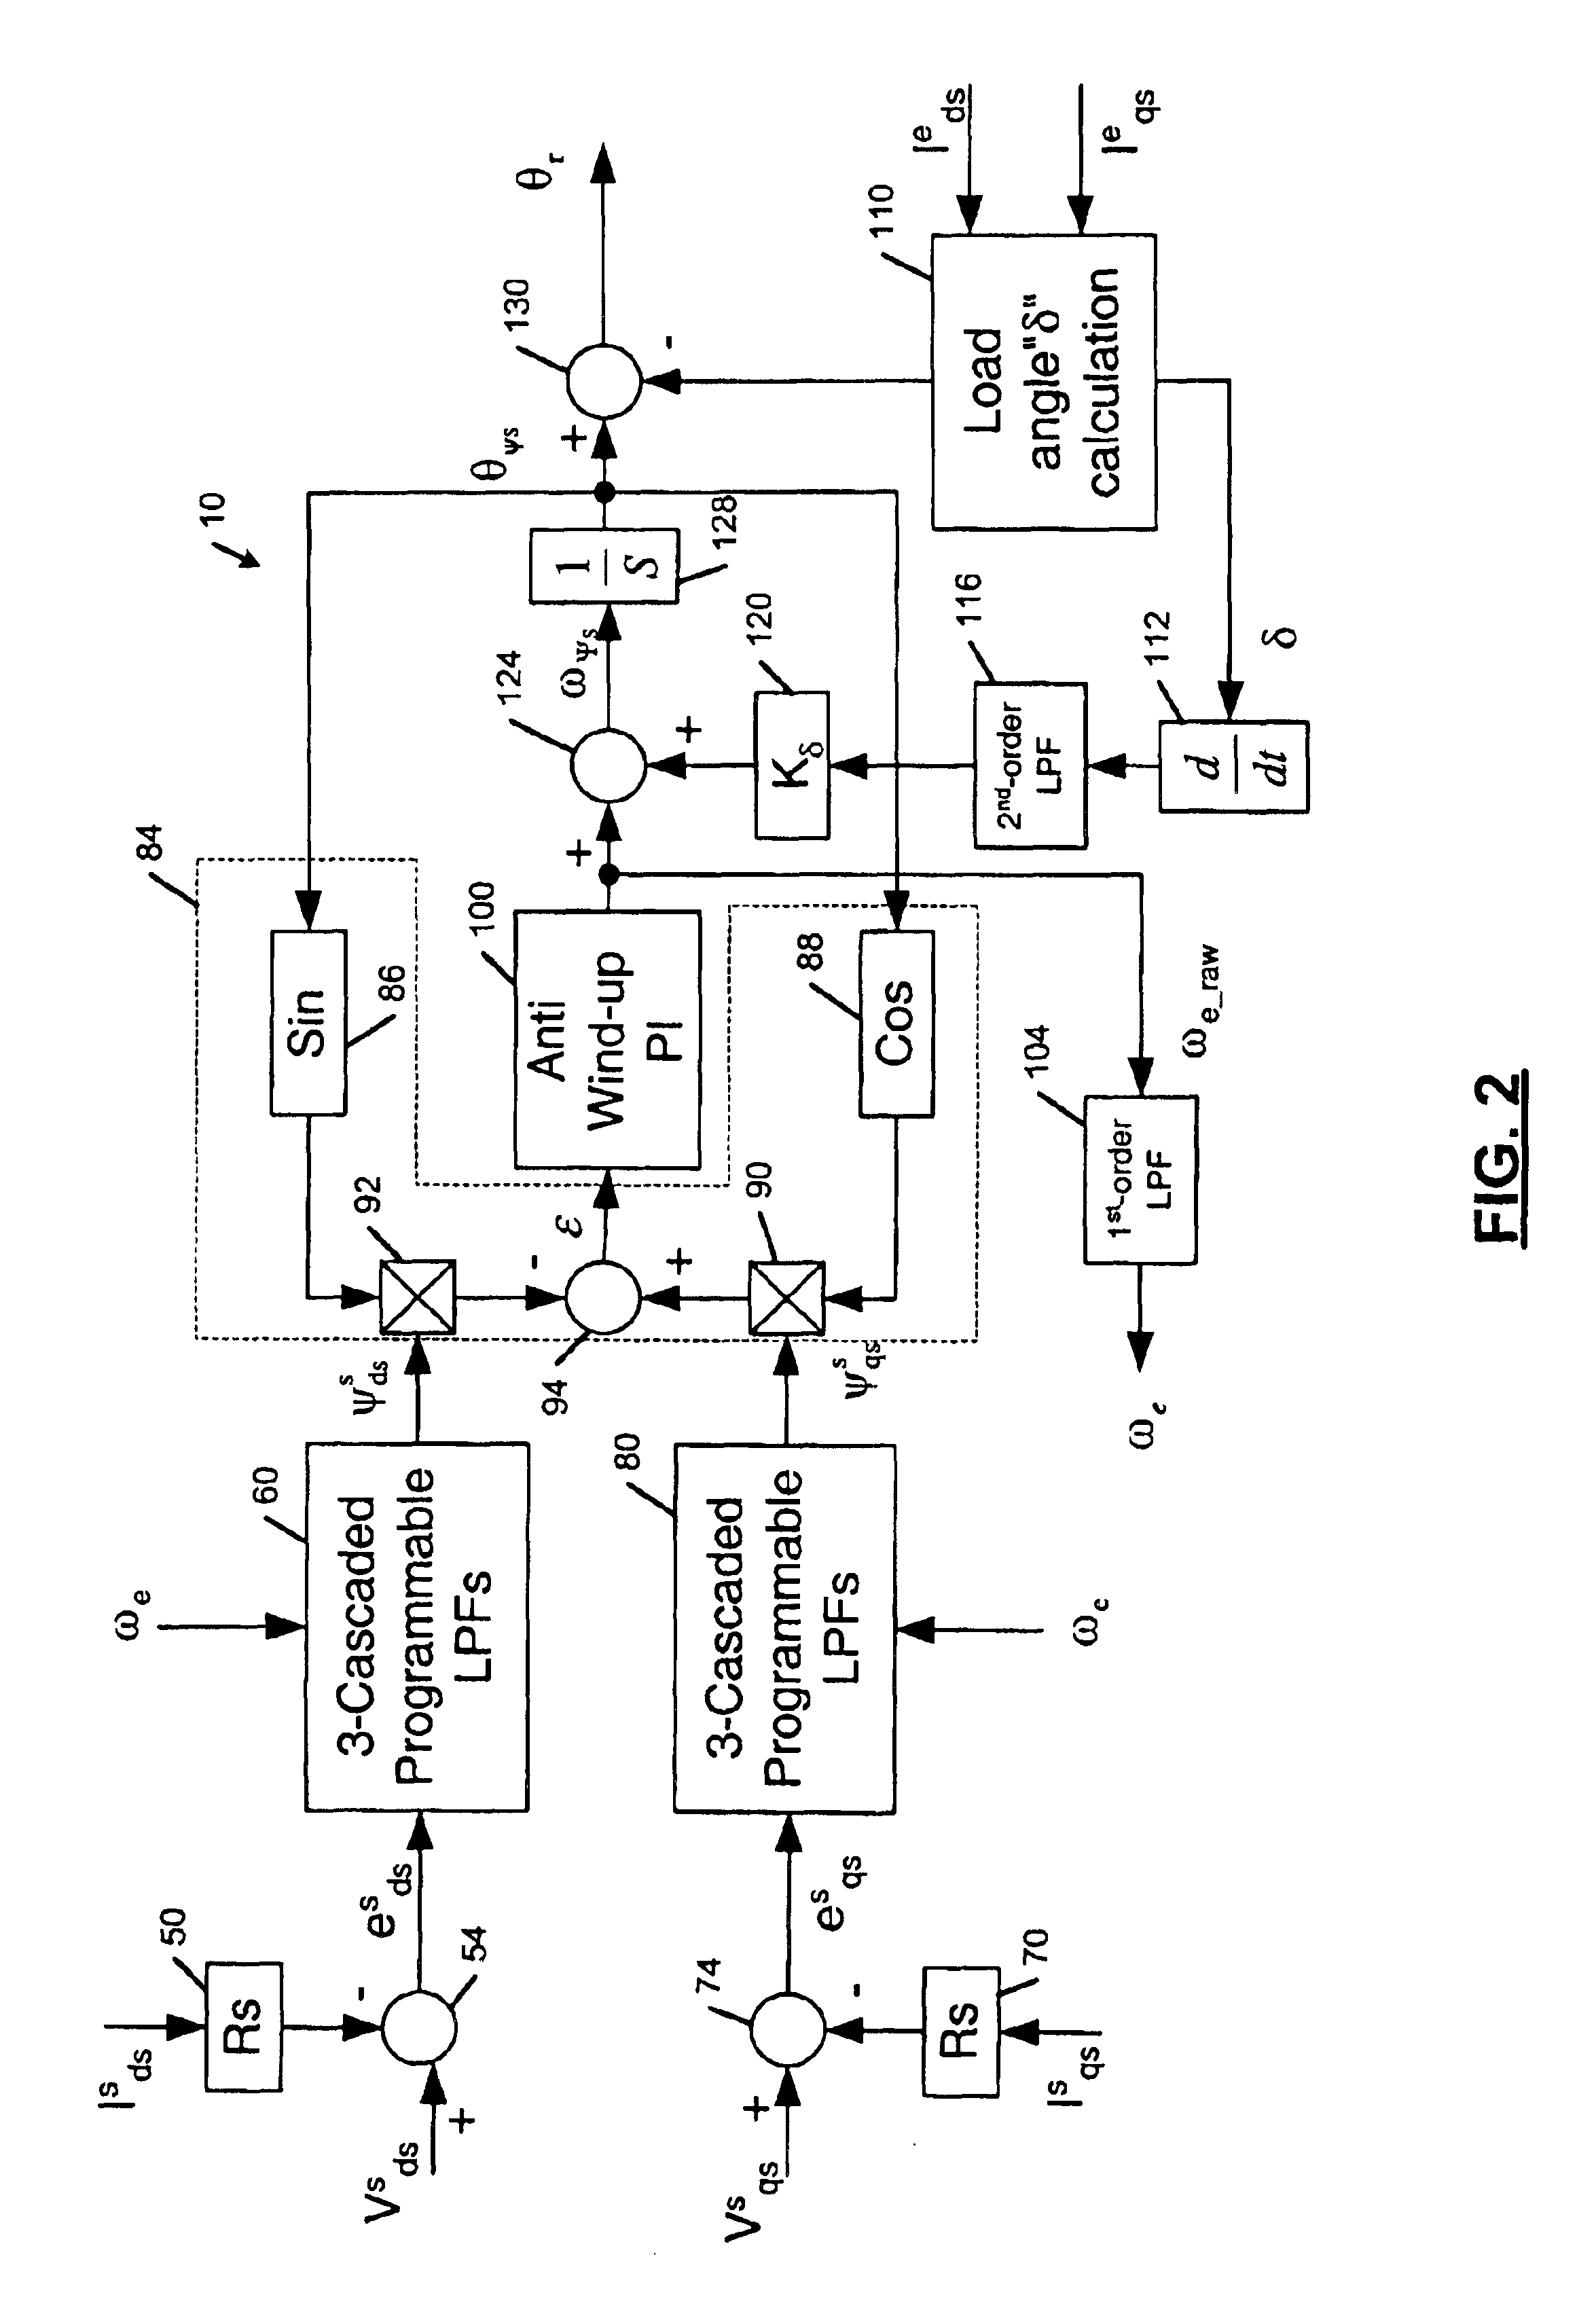 Flux observer in a sensorless controller for permanent magnet motors